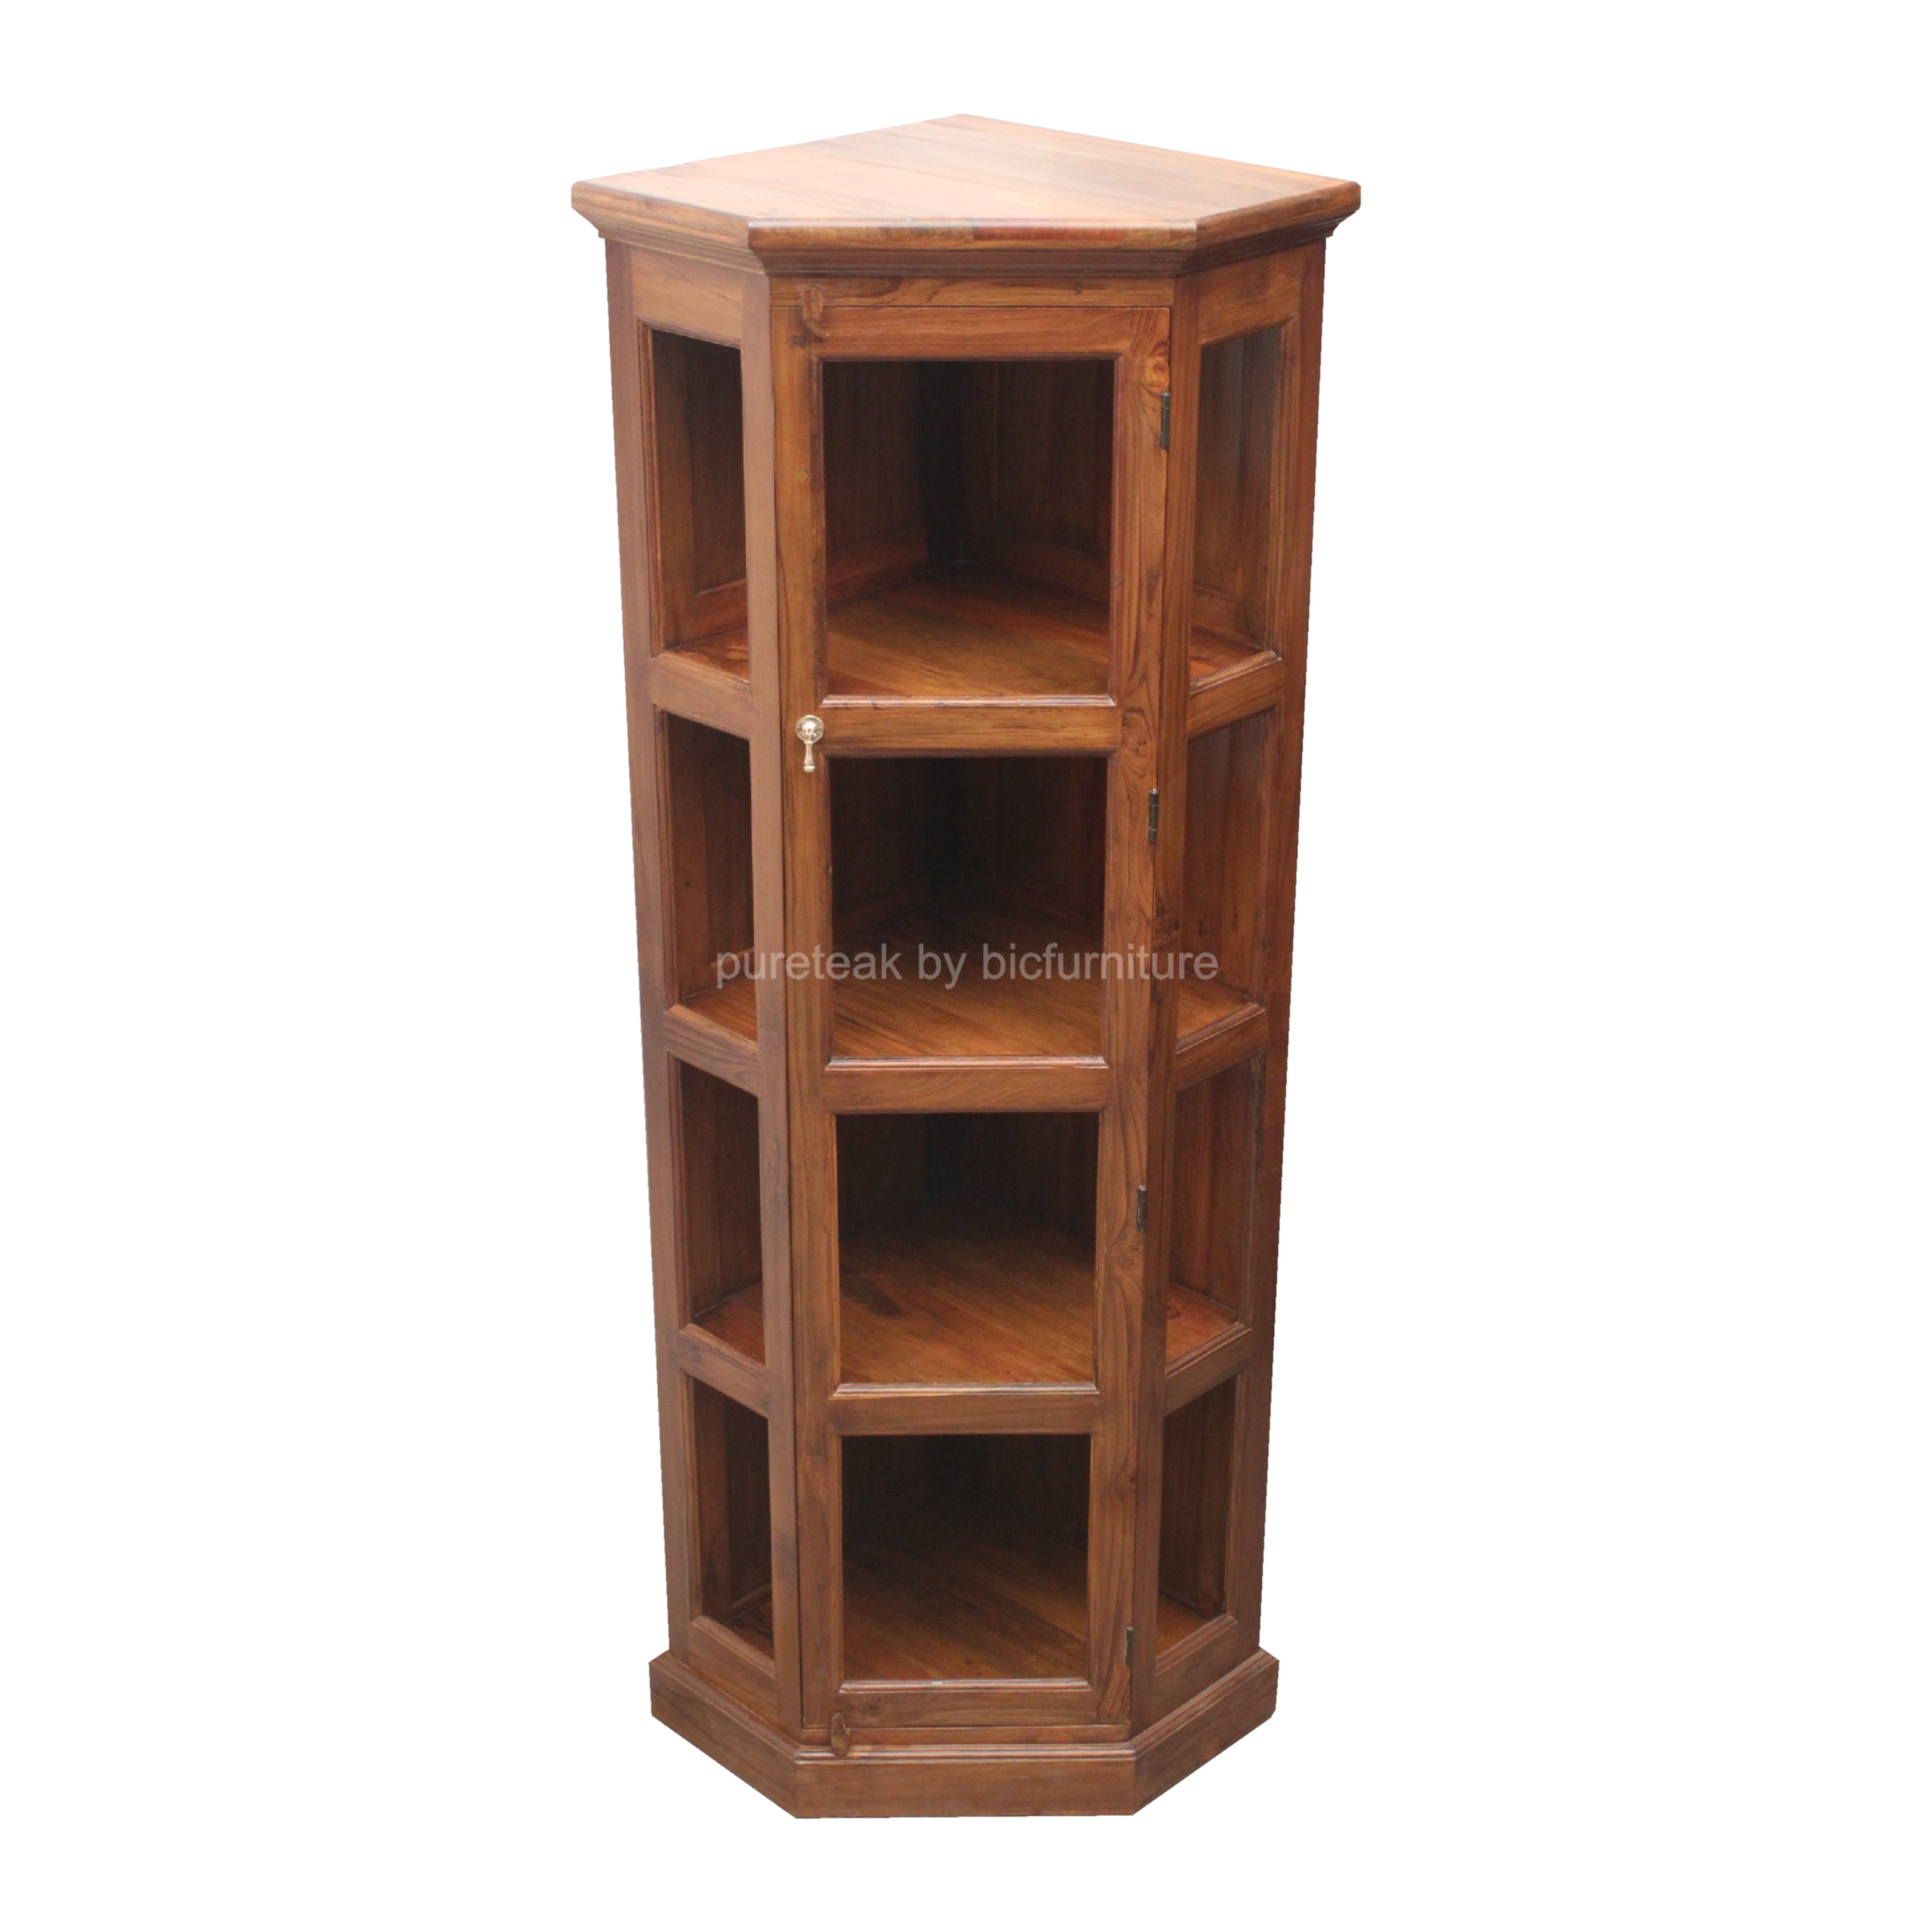 wooden corner cabinet triangular shape